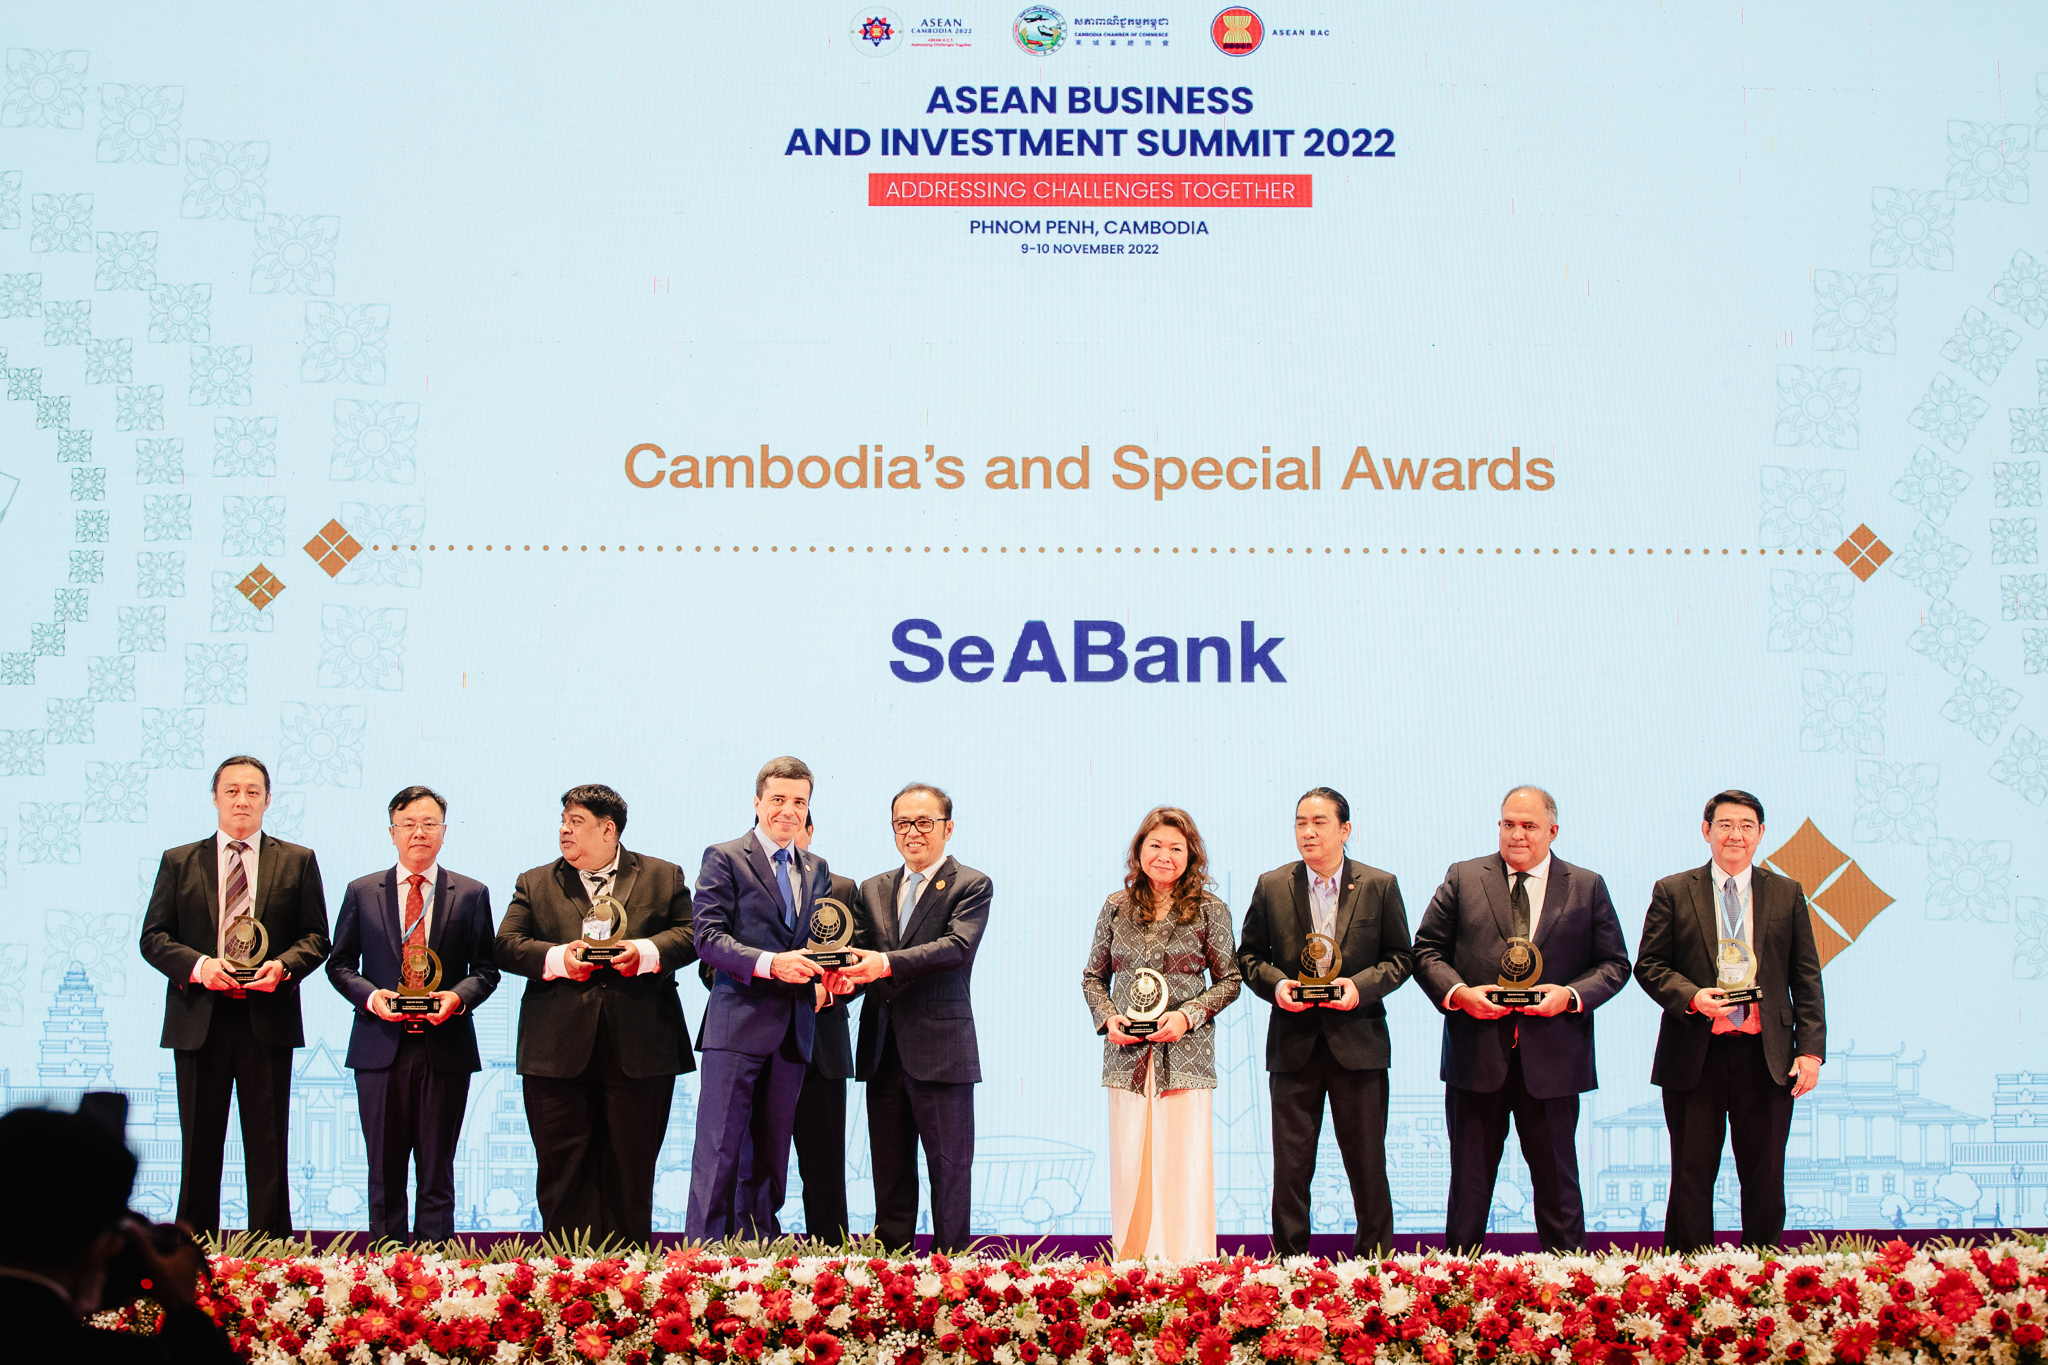 Kinh tế - SeABank là doanh nghiệp Việt Nam duy nhất nhận giải thưởng đặc biệt Cấp khu vực ASEAN Business Award 2022